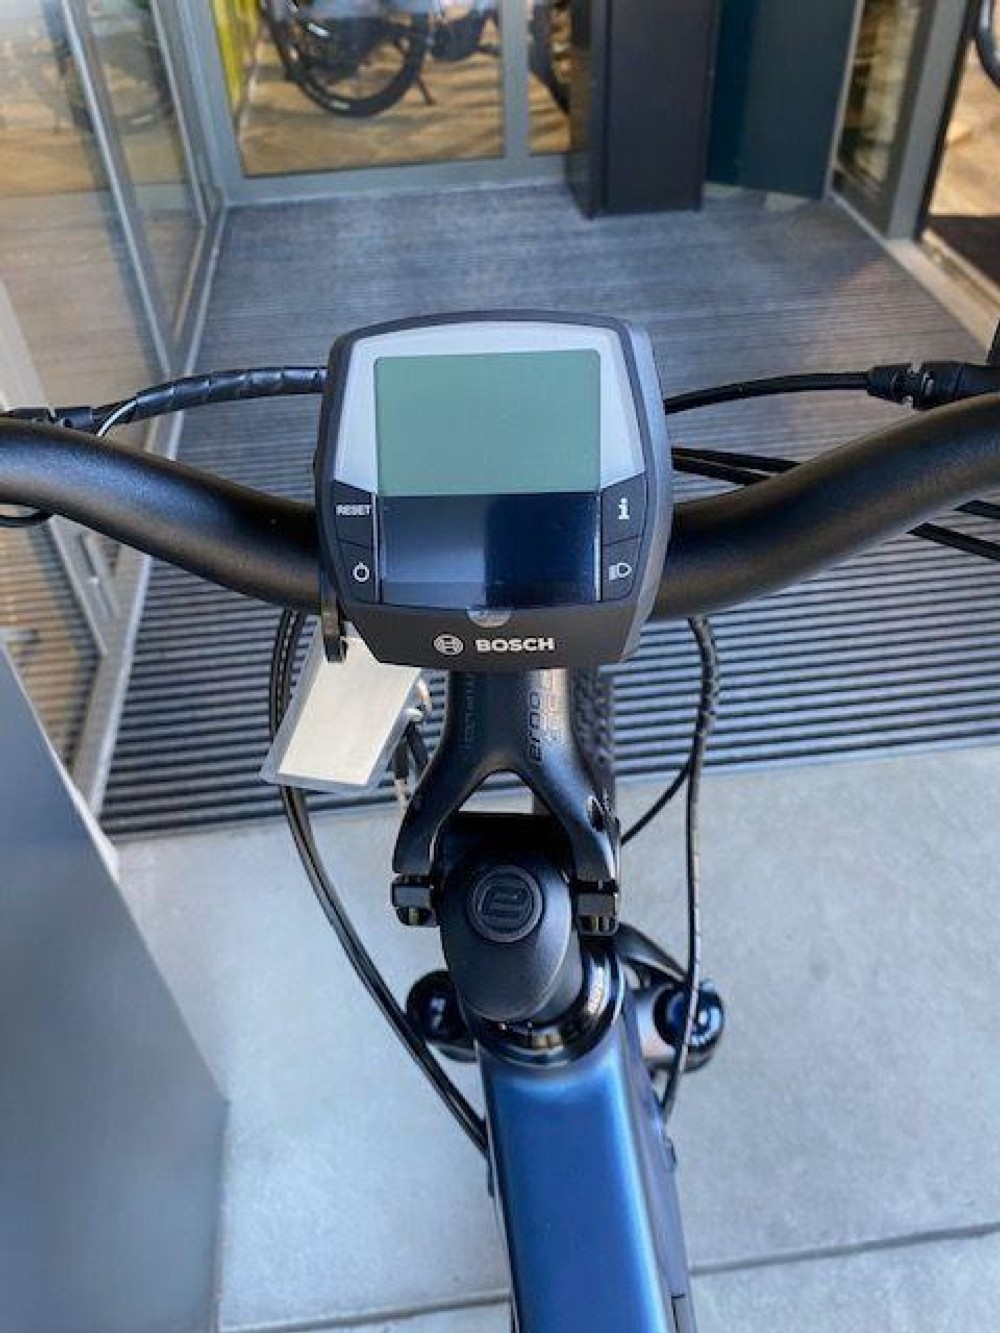 E-Bike kaufen: SIMPLON Kagu CX 27.5 Neu